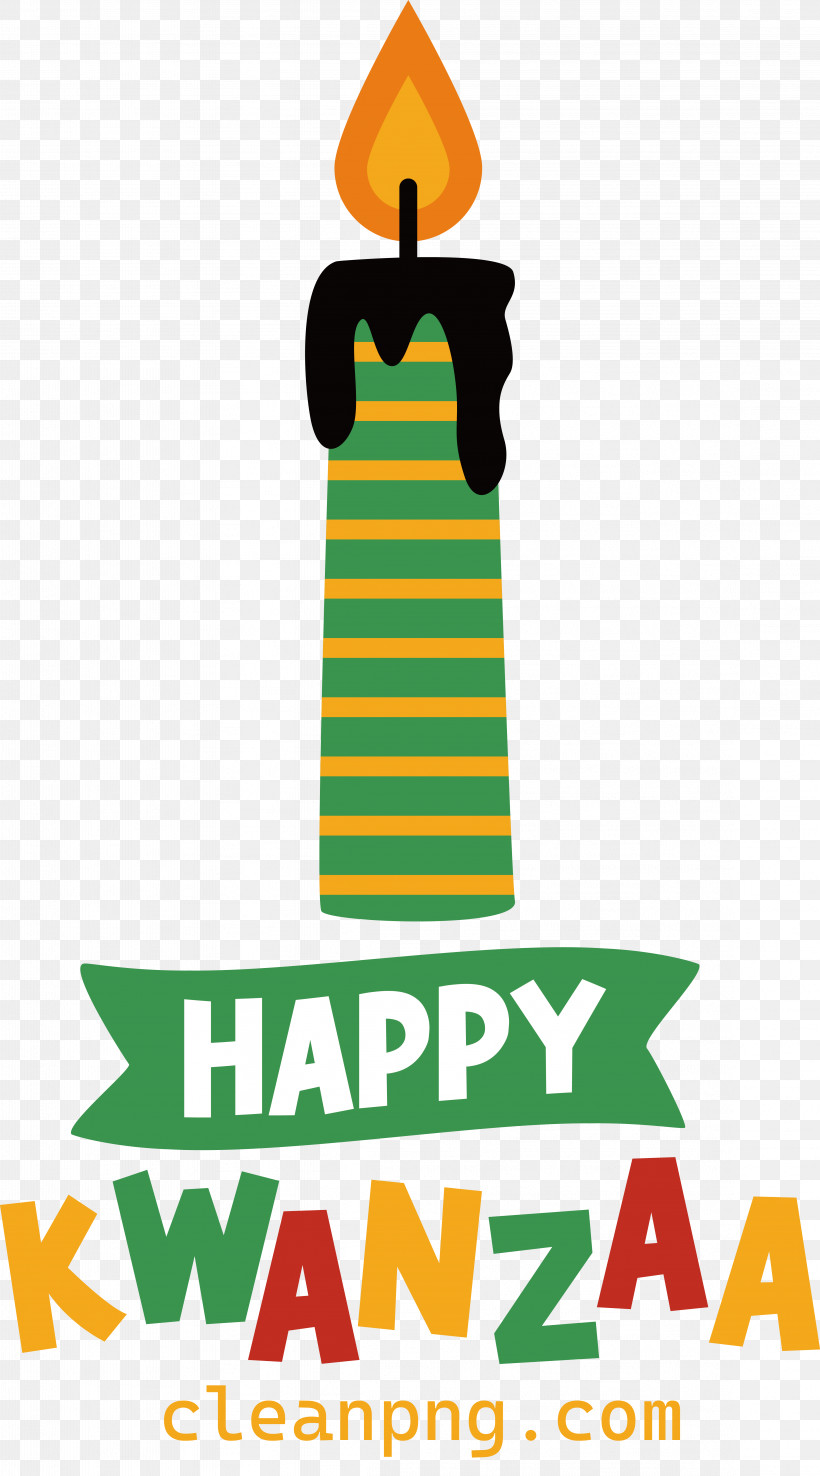 Happy Kwanzaa, PNG, 4577x8240px, Happy Kwanzaa Download Free